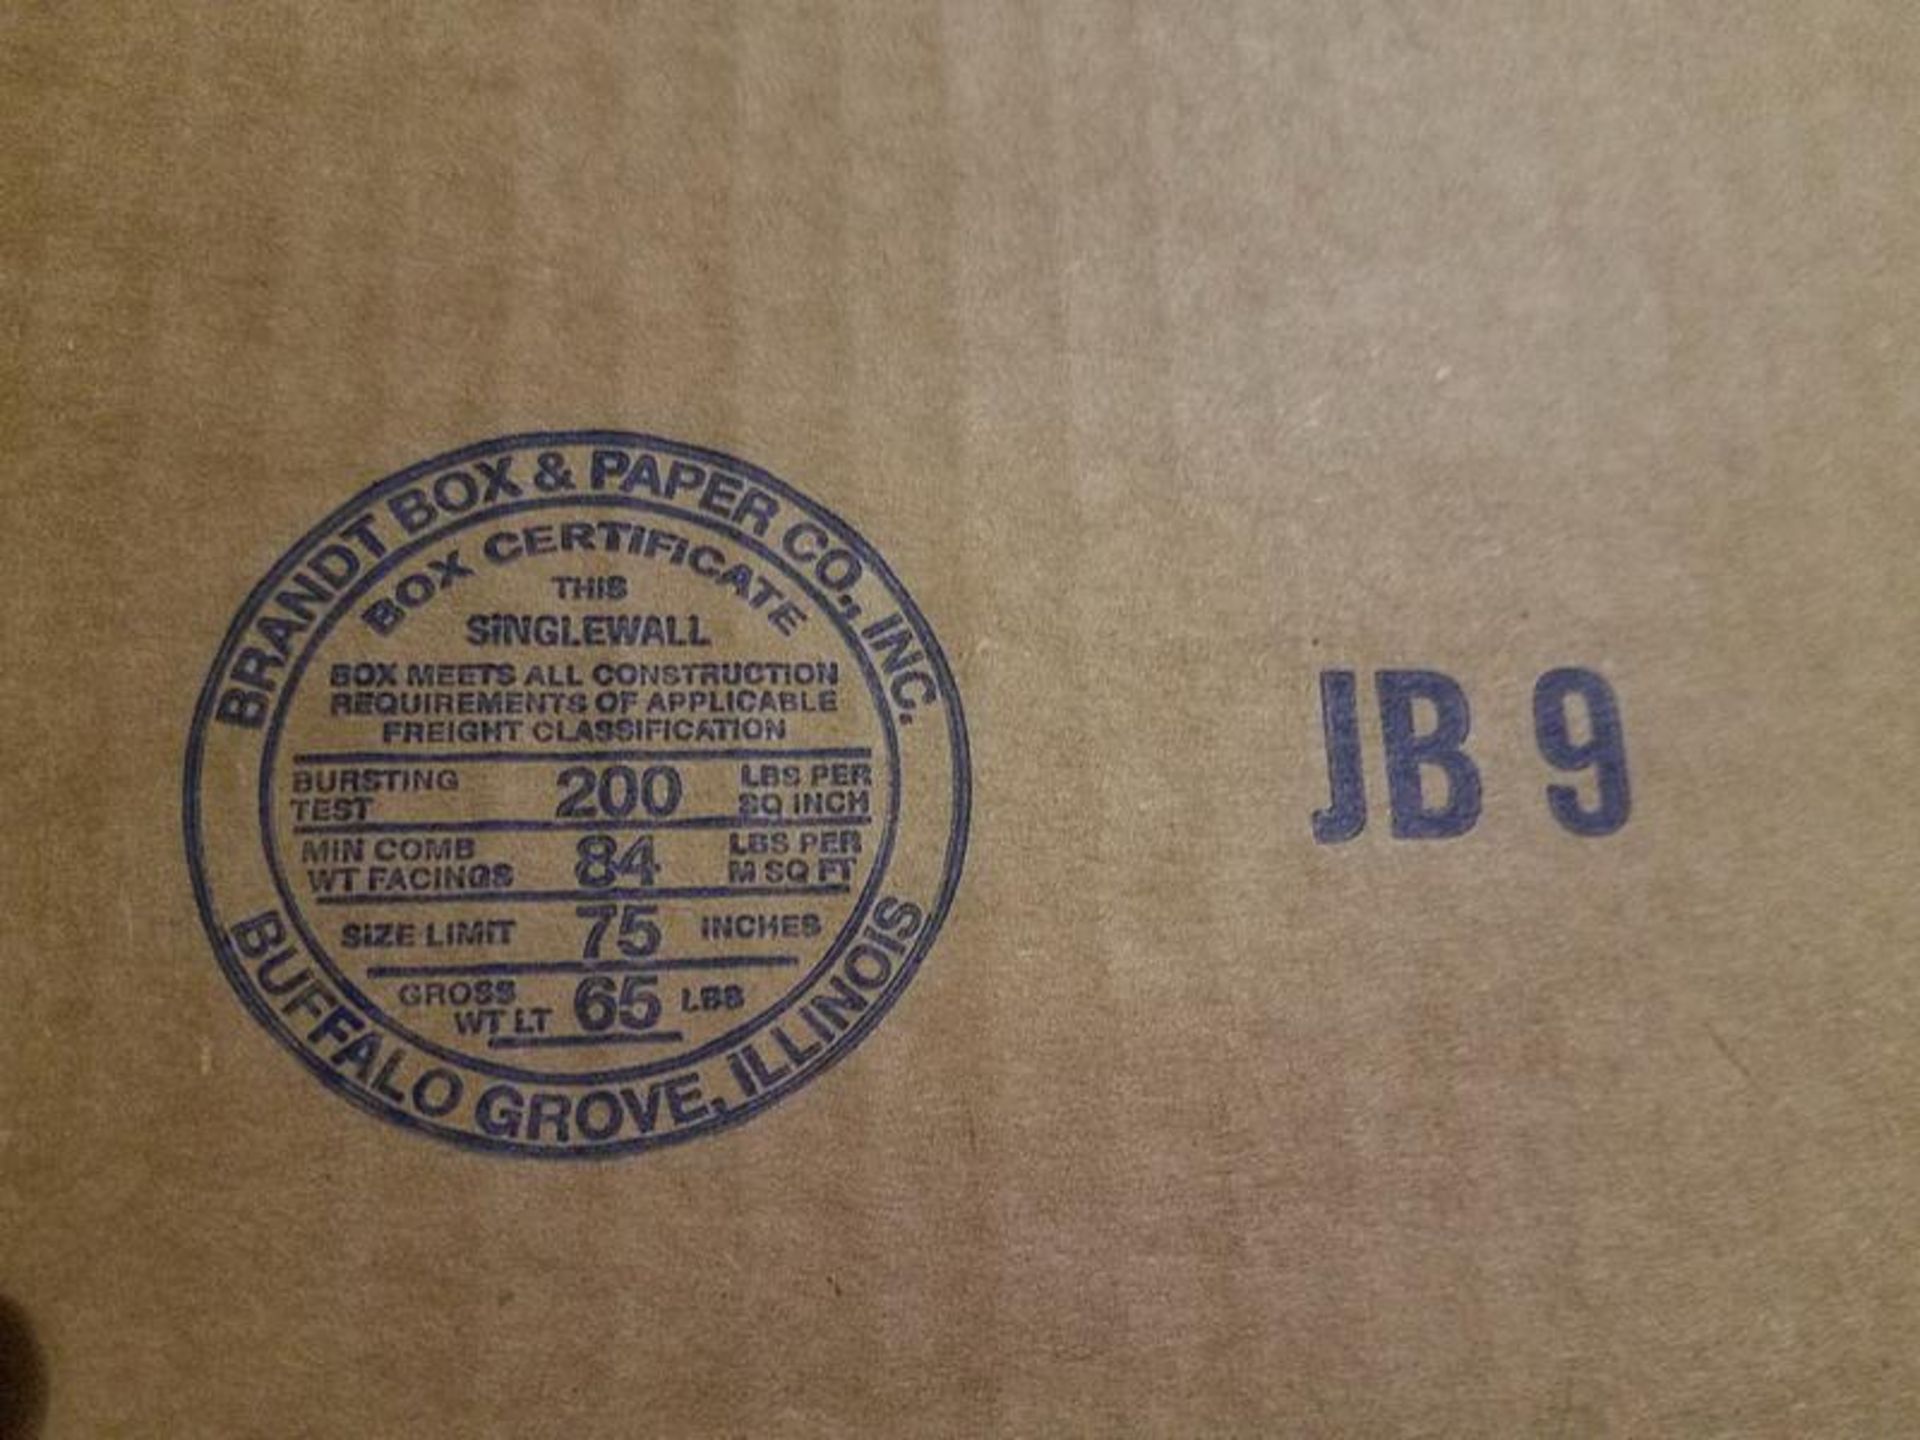 Lot Assorted Corrugated Boxes, JSP-JB9 & JSP-LB6 - Image 6 of 7